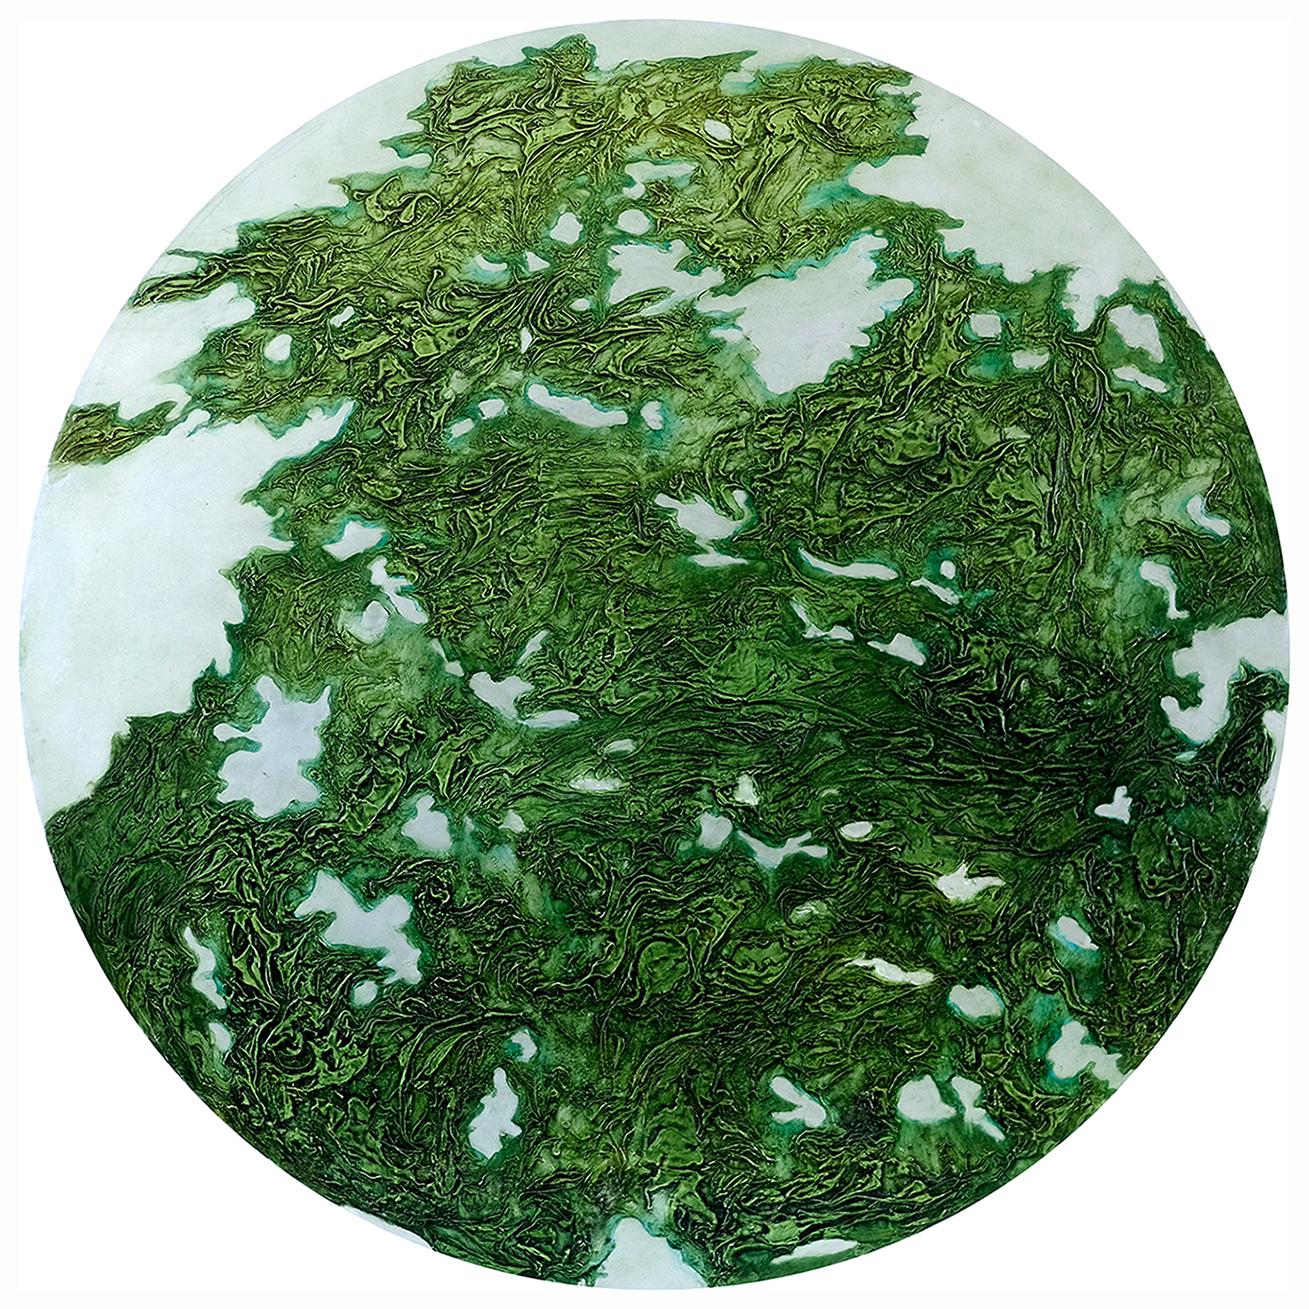 Jonathan Moss Abstract Painting - VF6, original art, abstract art, green art, nature art, circular art